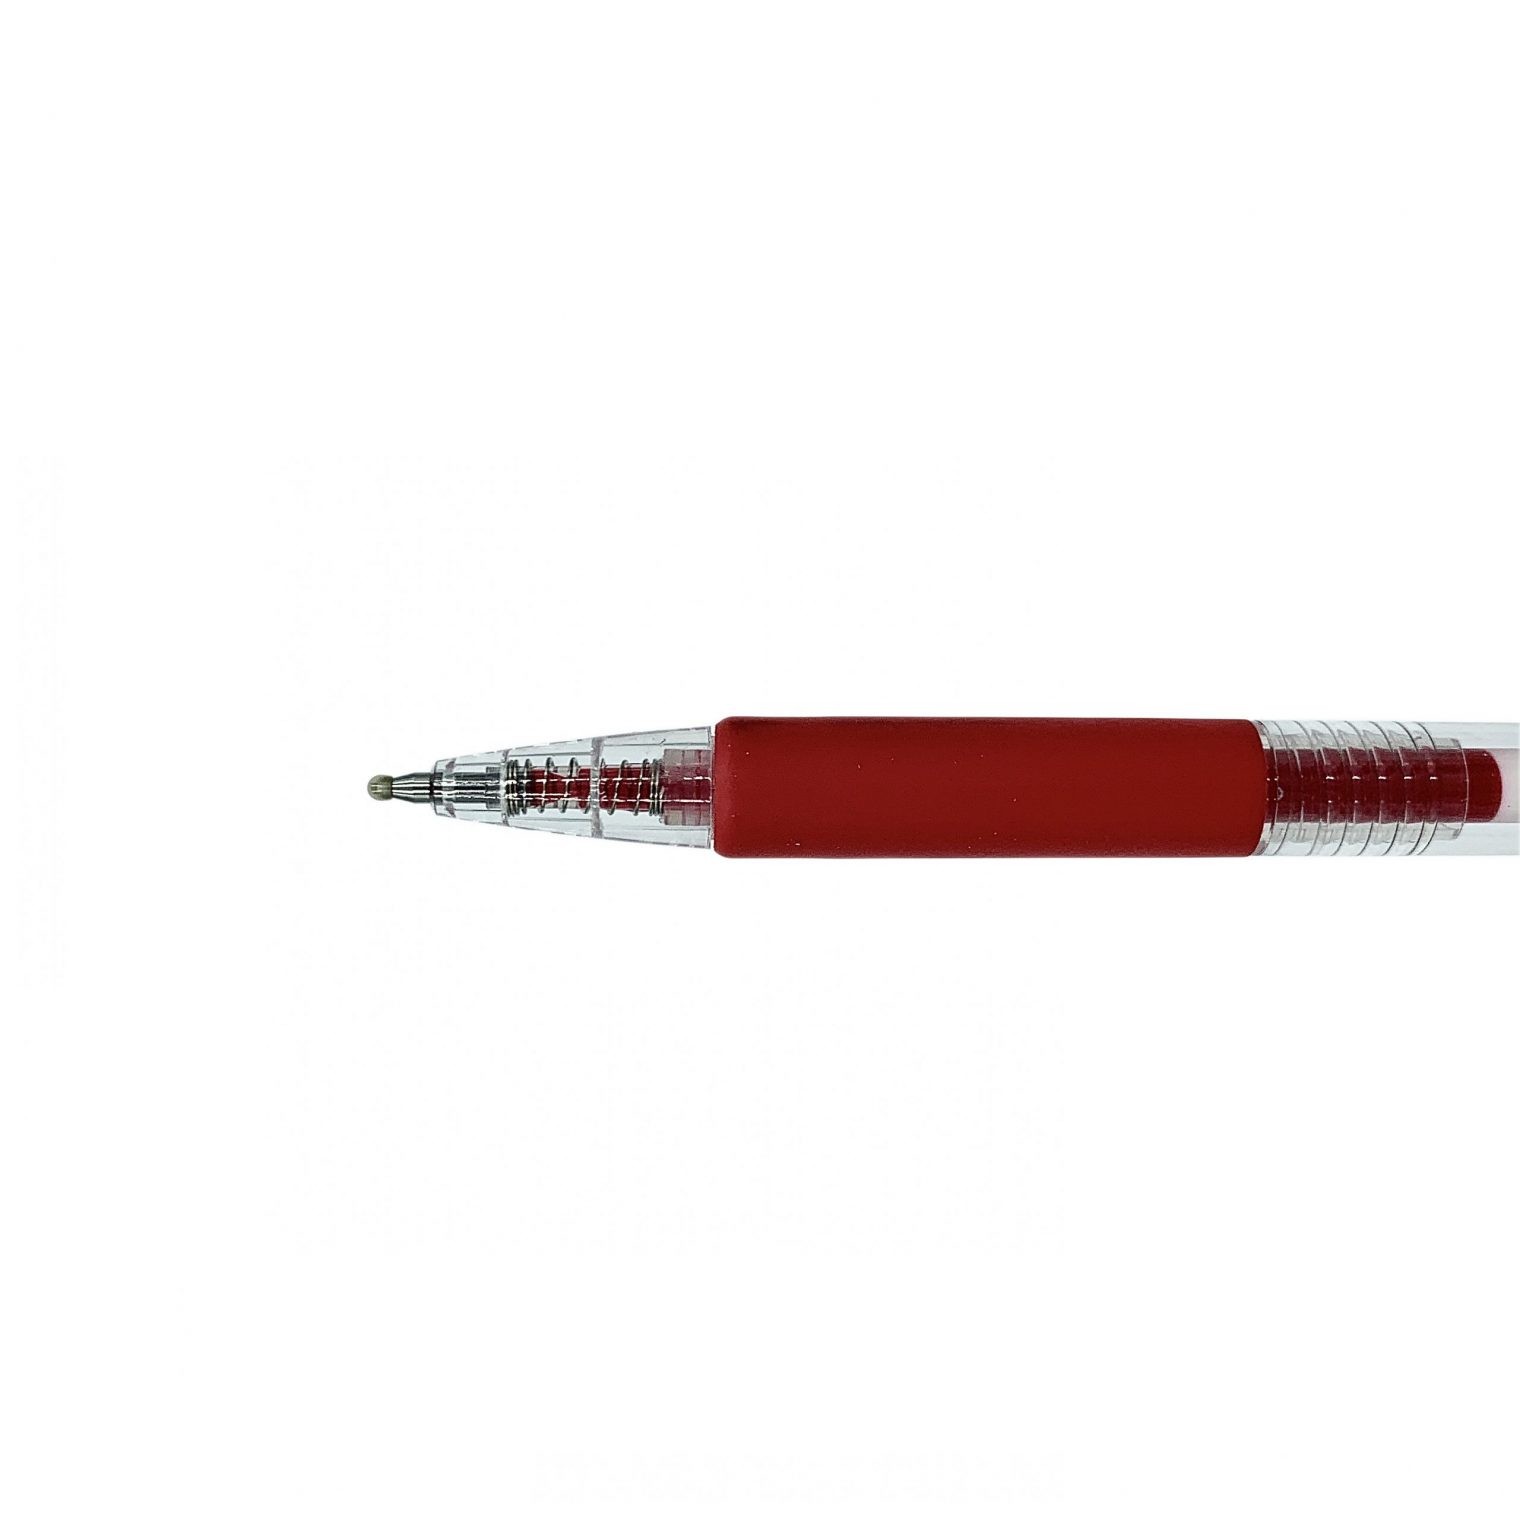 Bút Bi Double A Mực Gel Ngòi 0.7mm – Đỏ